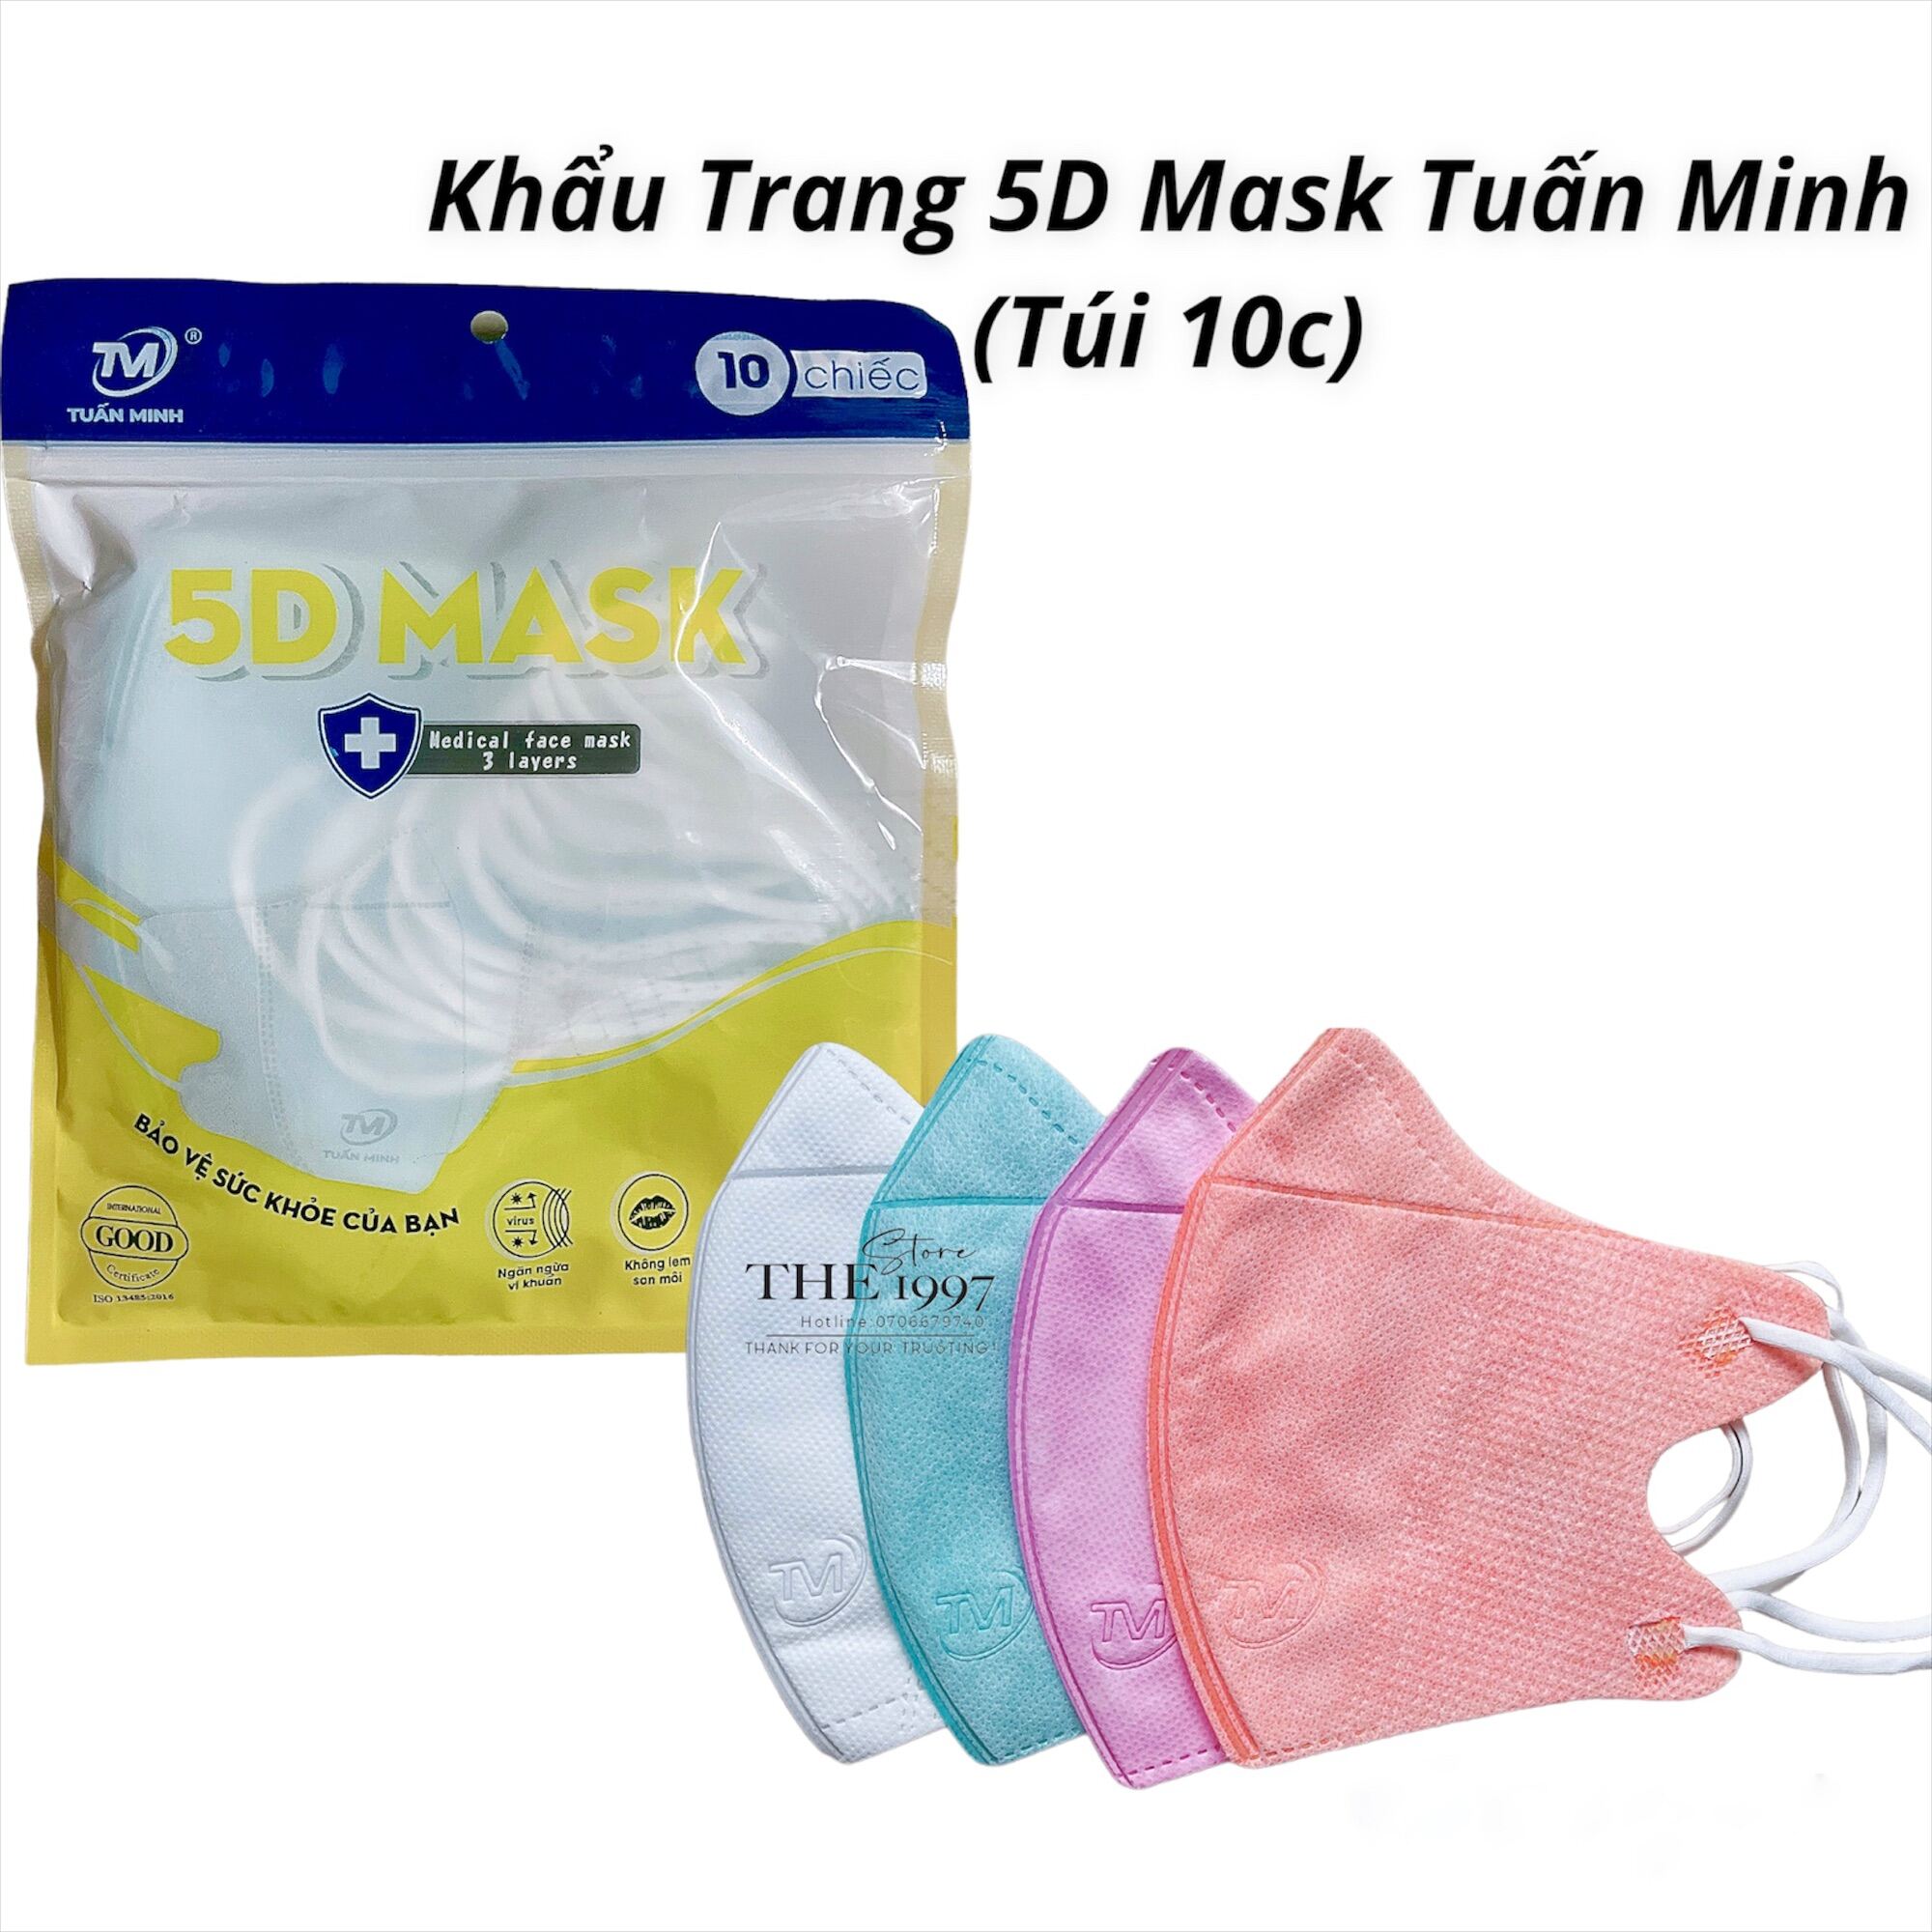 Khẩu trang 5D Mask Tuấn Minh Kháng Khuẩn Đủ Các Màu, thuộc công ty Tuấn Minh Túi 10 chiếc dày 3 lớp vải không dệt